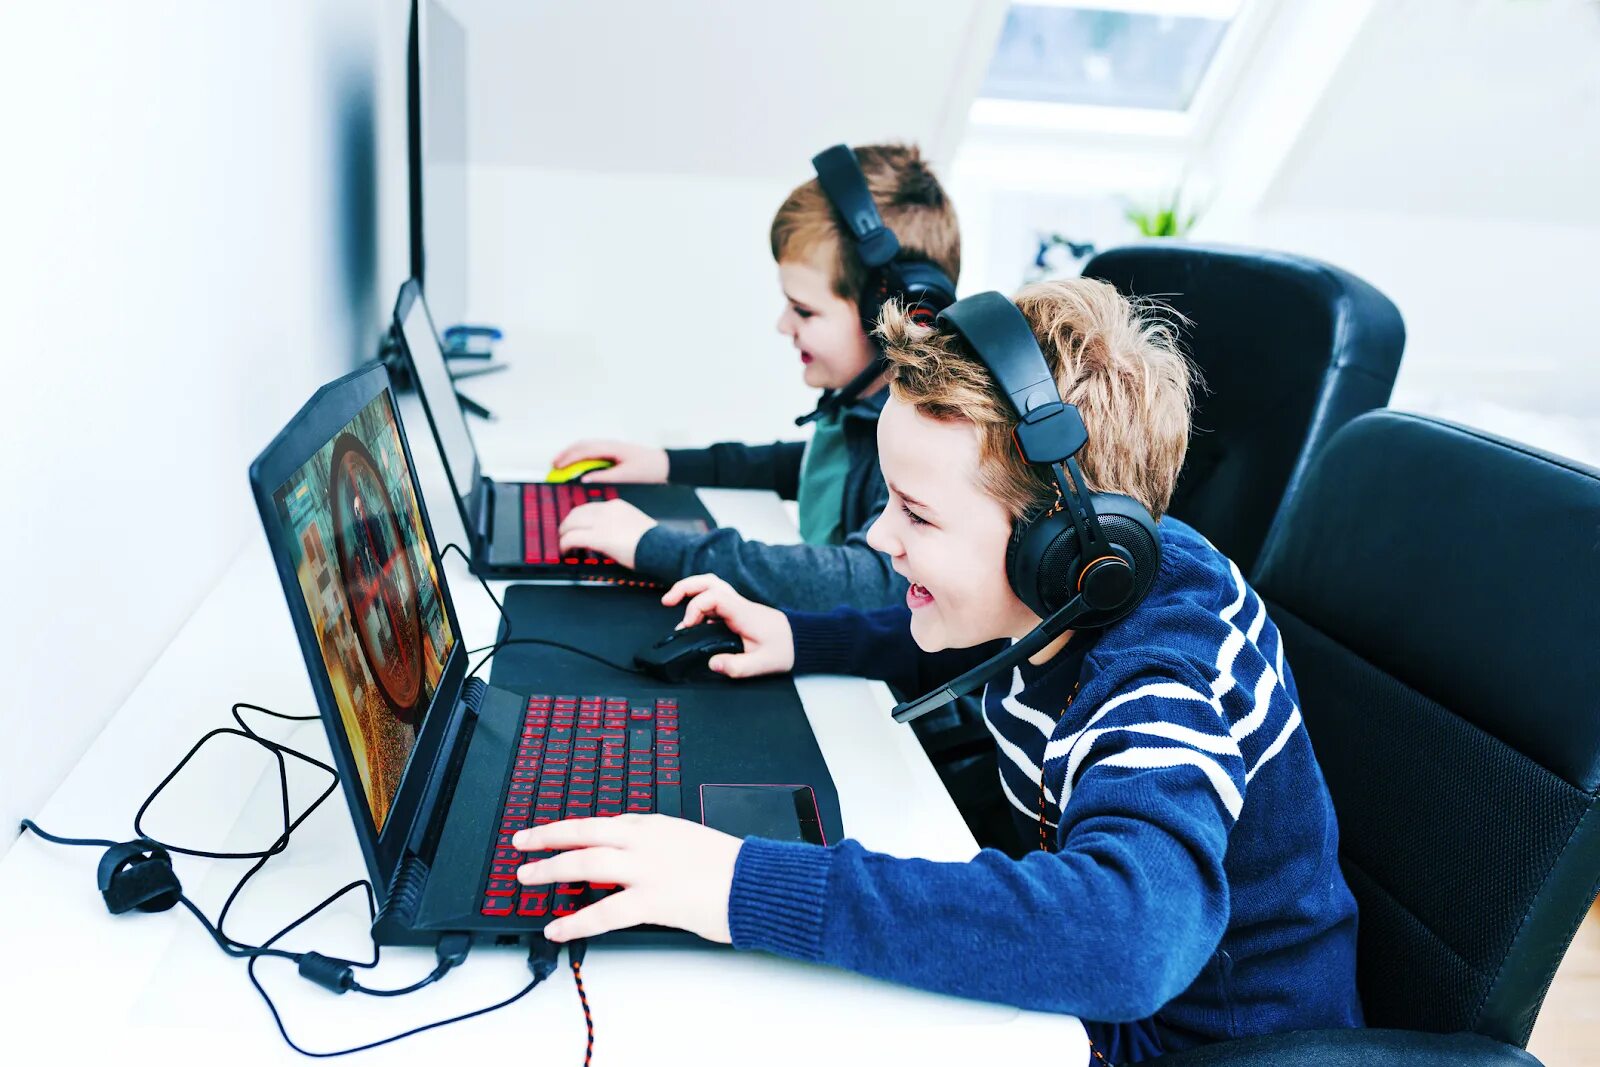 Игра она с интернетом. Игровая зависимость. Ребенок за компьютером. Дети играющие в комп. Подросток играющий в компьютер.